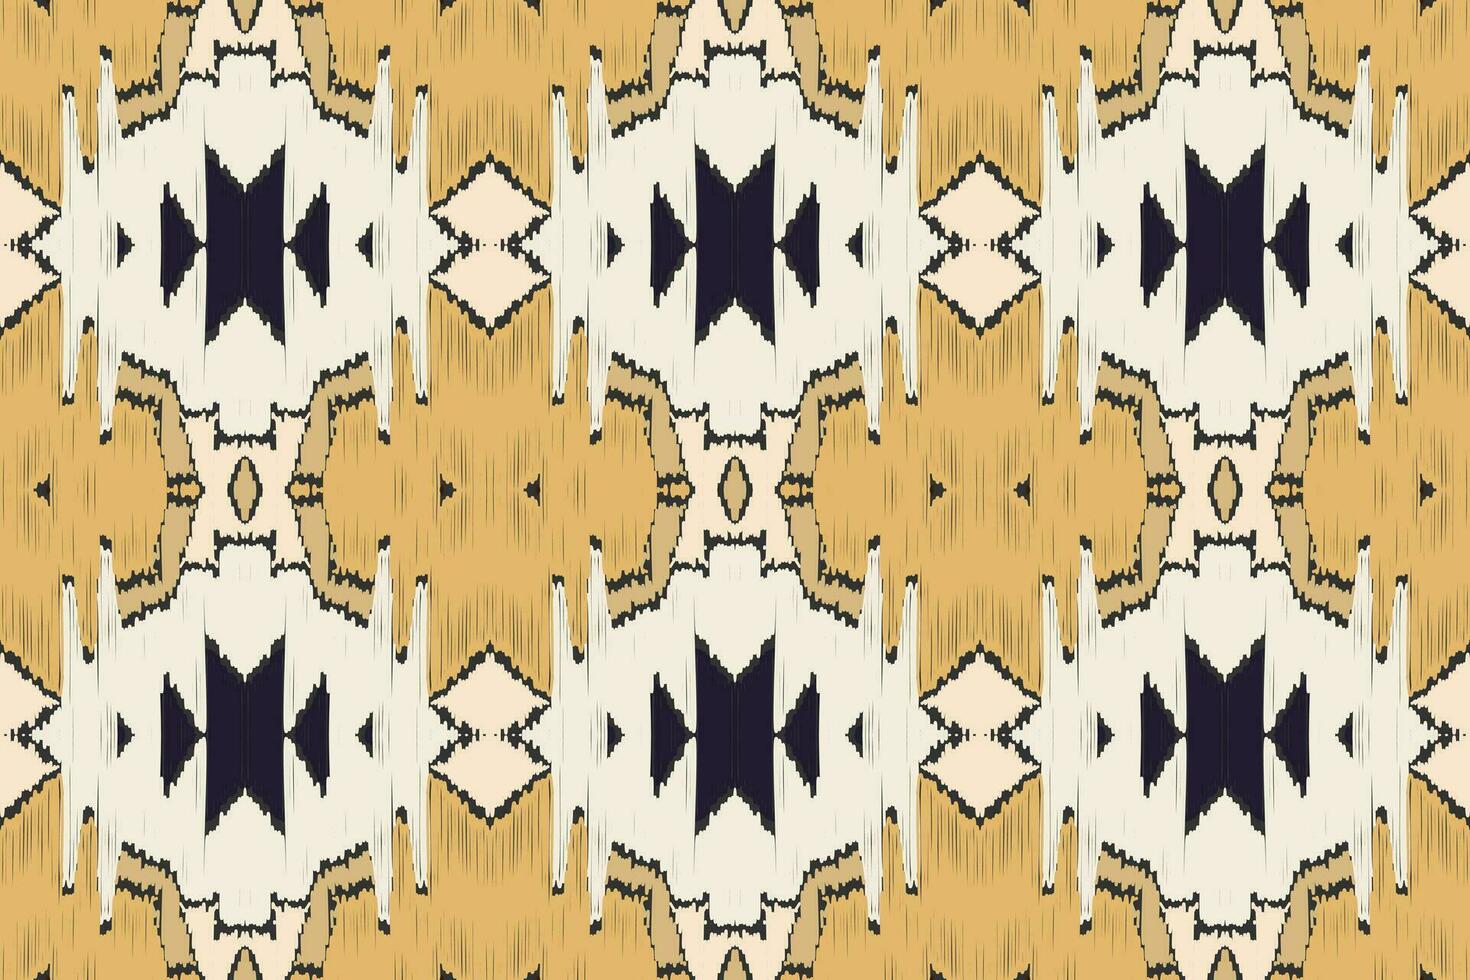 ikat sömlös mönster broderi bakgrund. ikat damast- geometrisk etnisk orientalisk mönster traditionell.aztec stil abstrakt vektor design för textur, tyg, kläder, inslagning, sarong.